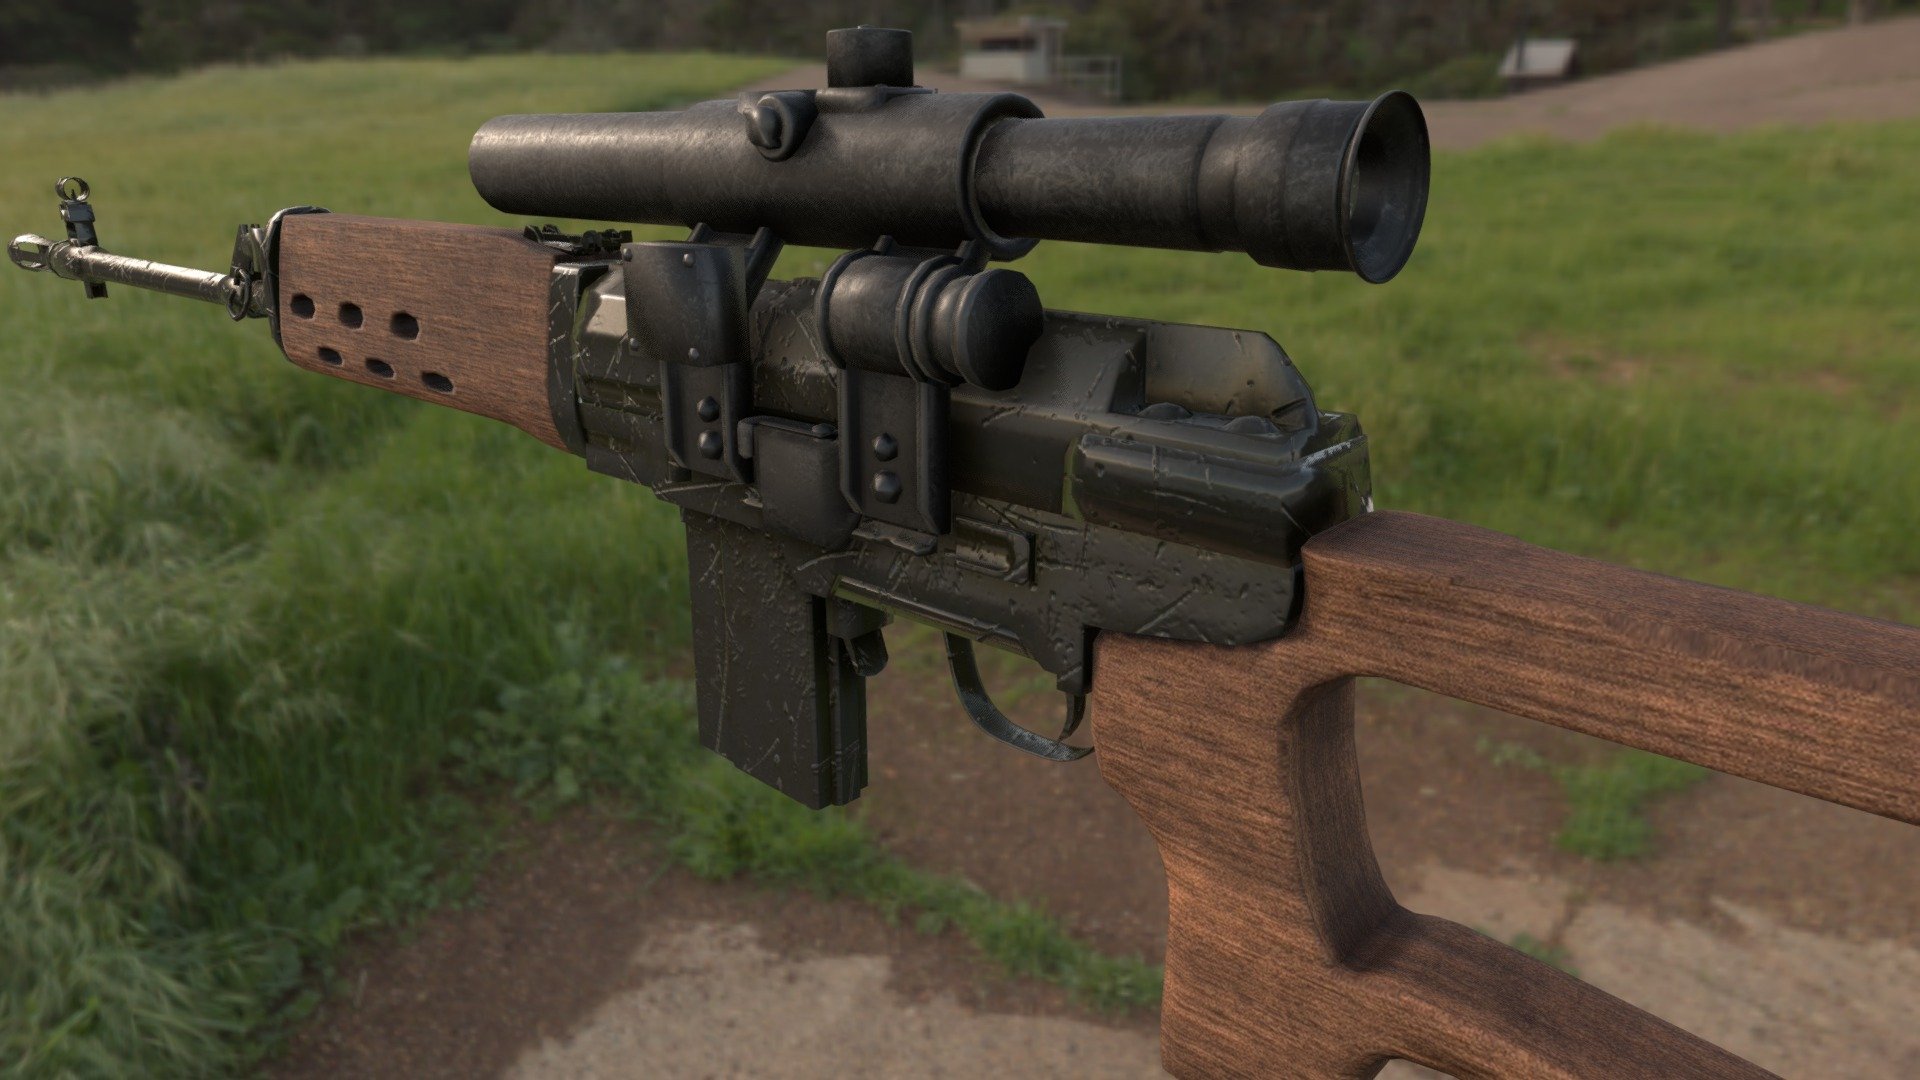 Dragunov_SVD - a sniper rifle mad bye Soviet Union - Dragunov_SVD - 3D model by Kasra Homayoni Afshar (@KasraHomayoniAfshar) 3d model